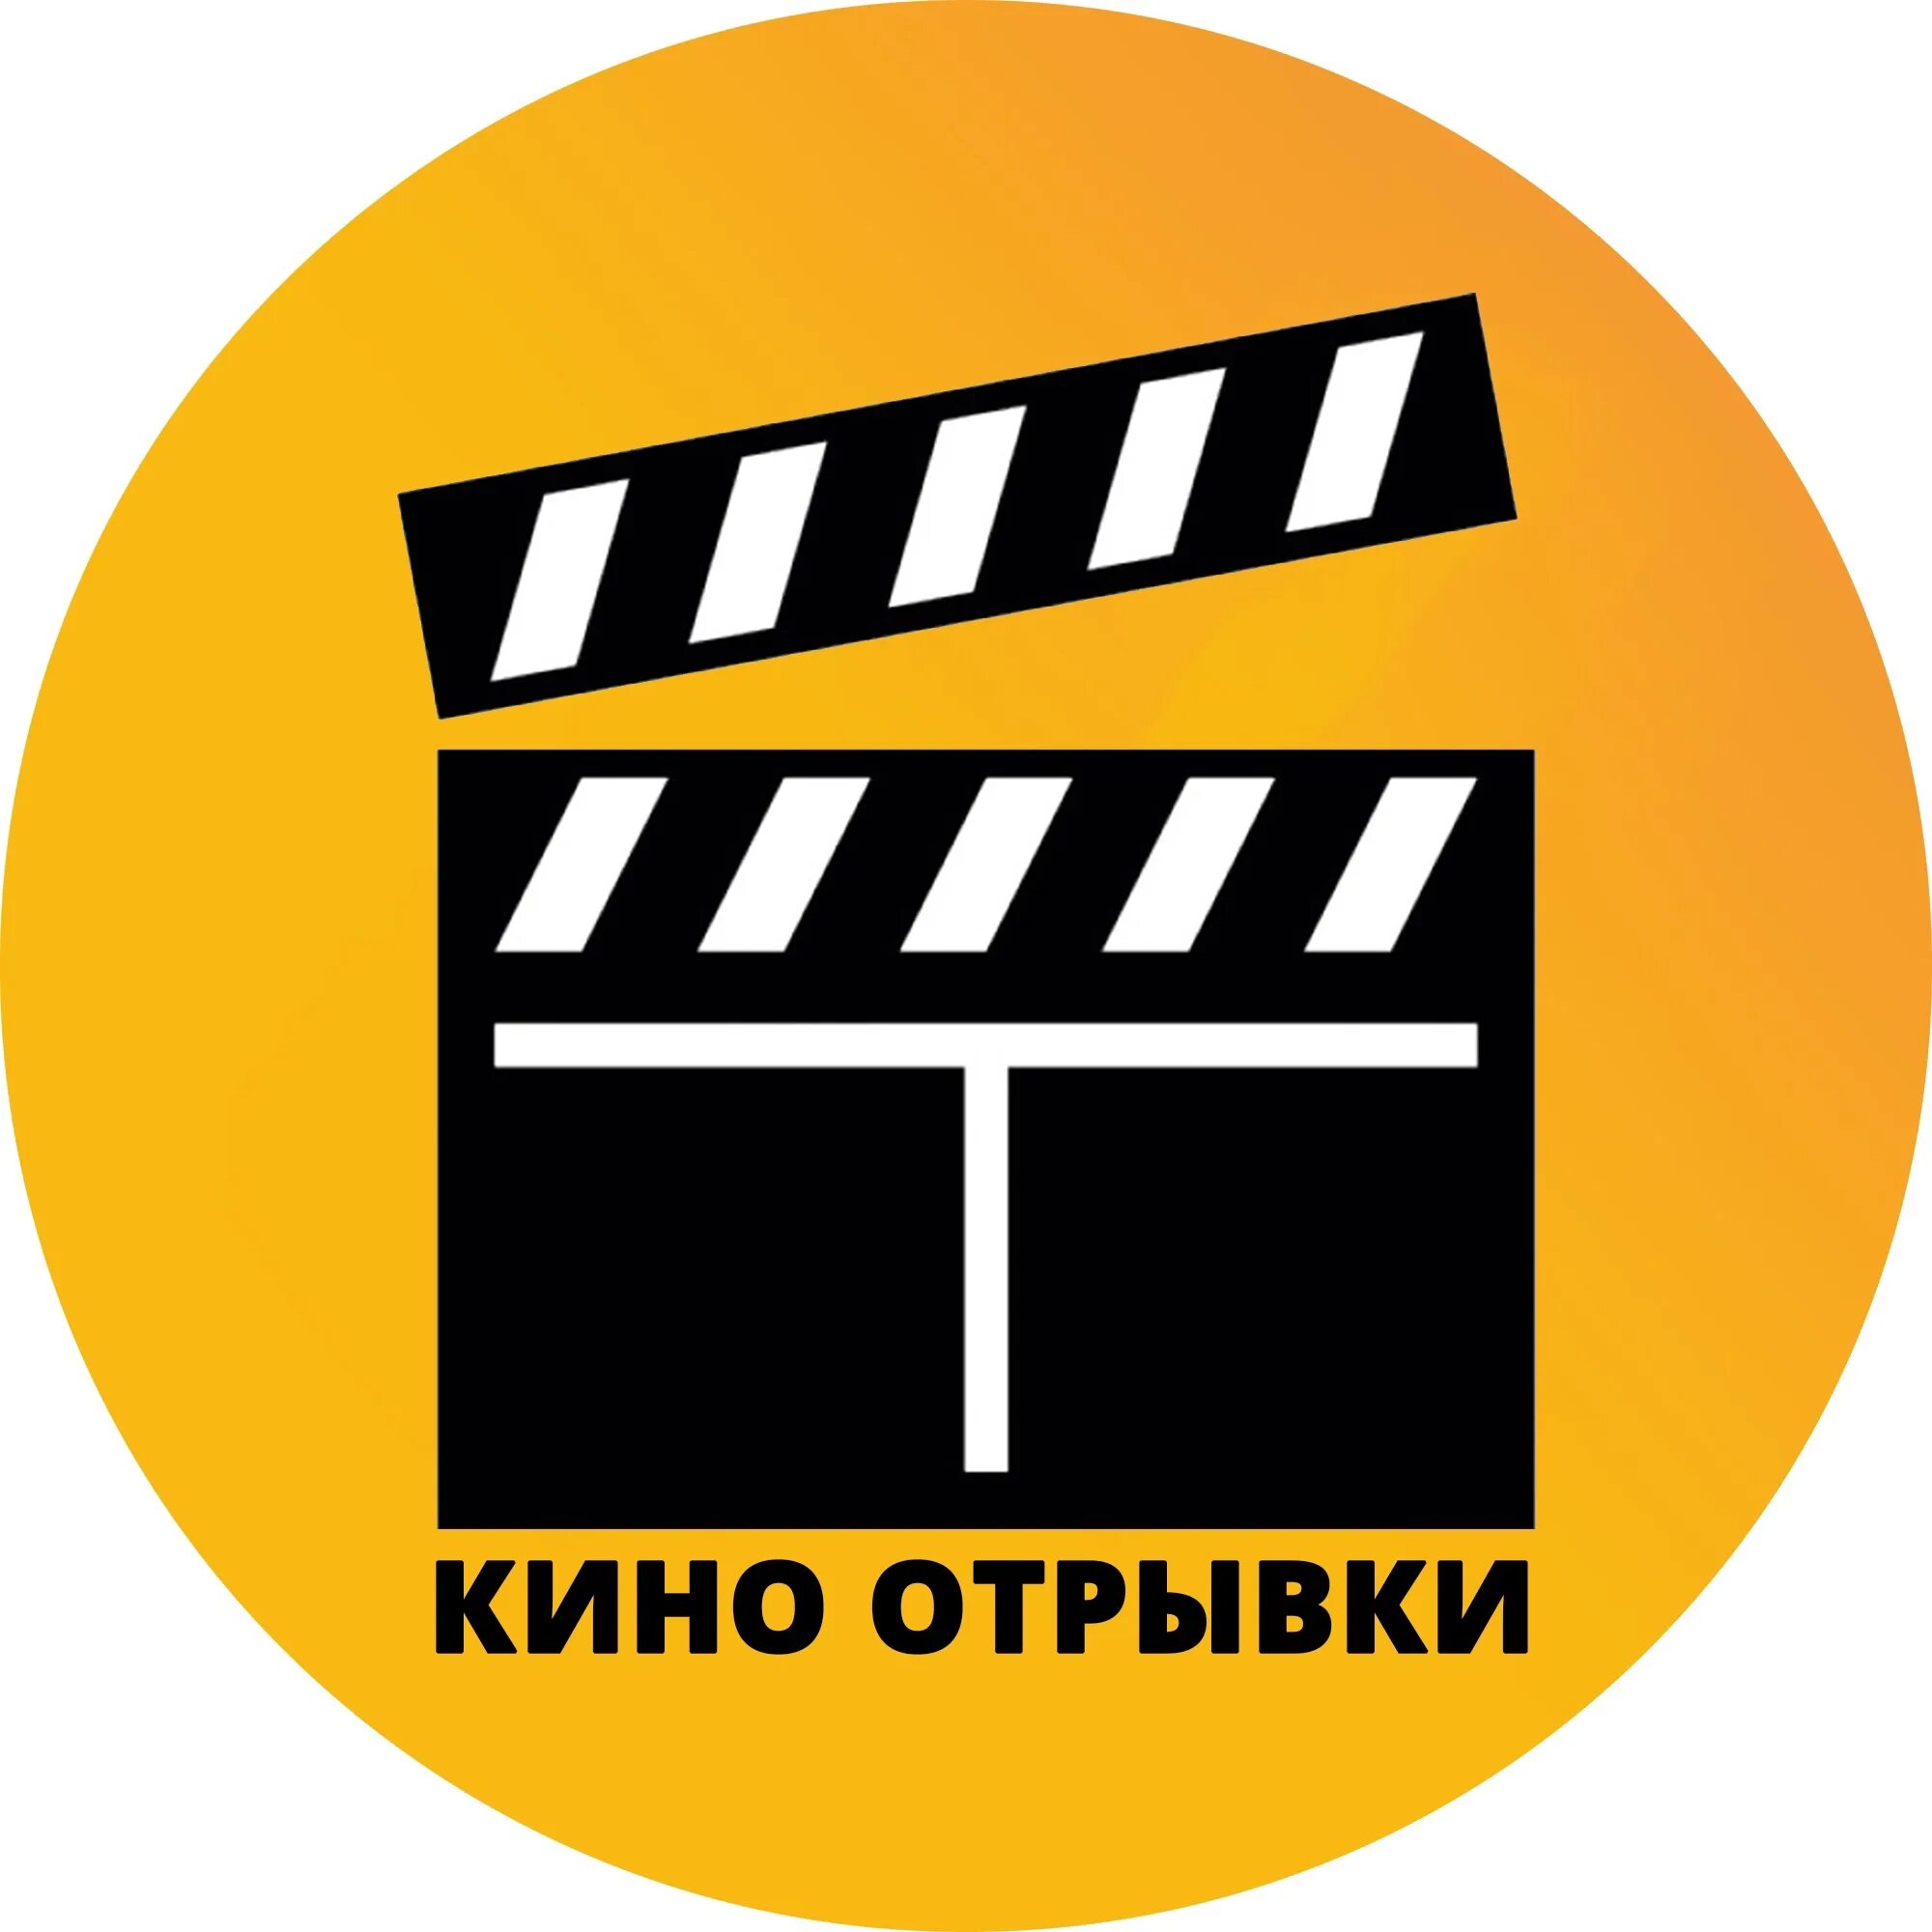 Логотип кинотеатра. Логотип кинематографа.